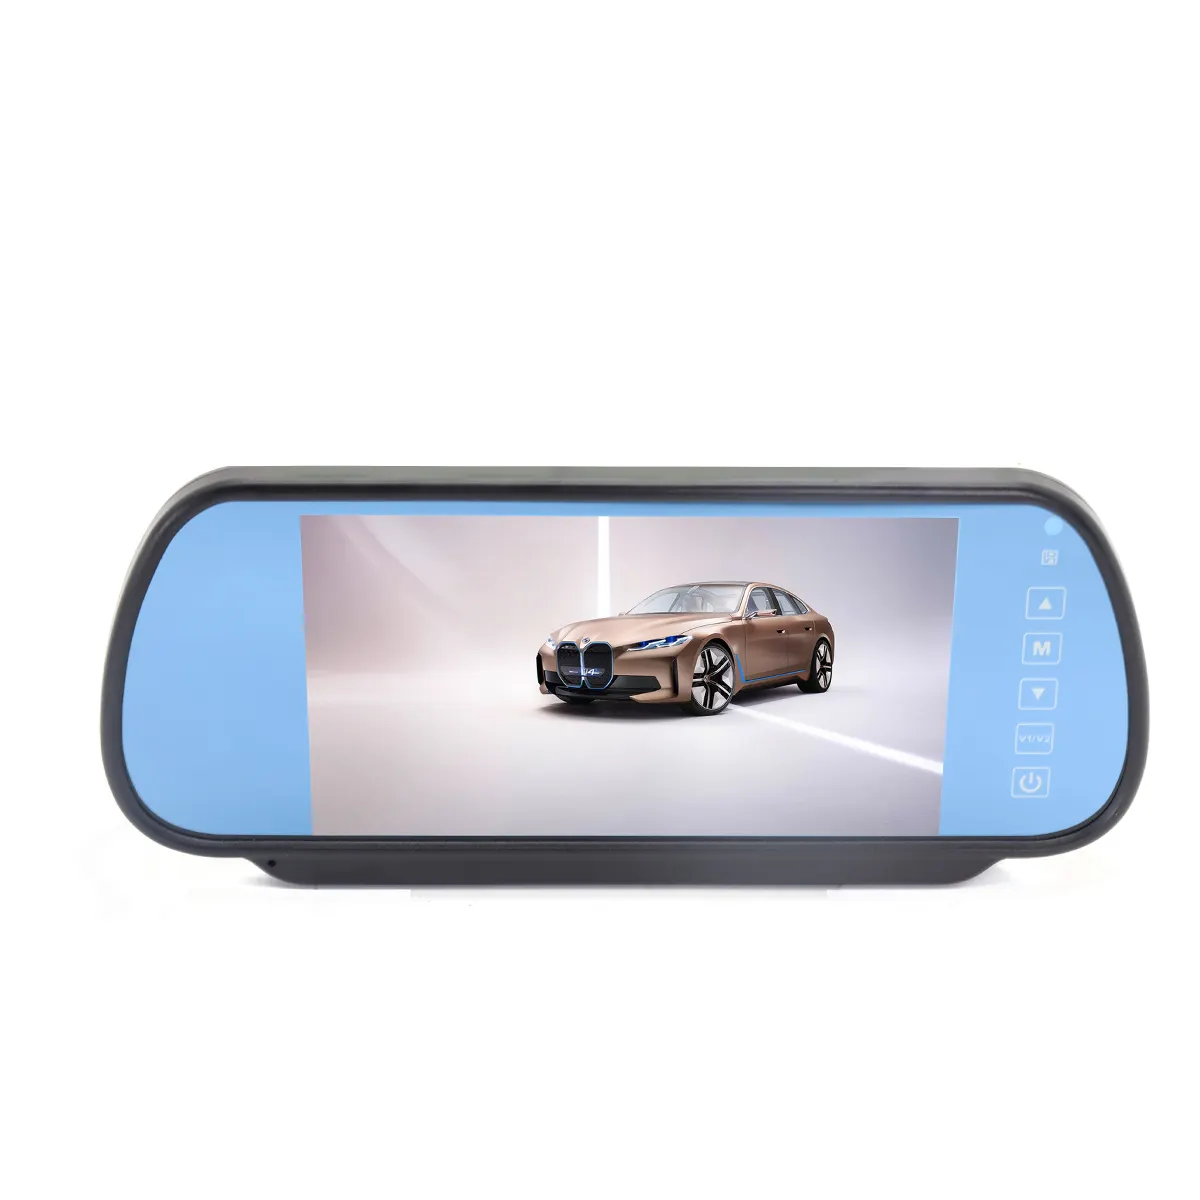 Monitor traseiro de carro com TFT LCD de alta resolução, 7 polegadas, espelho retrovisor, monitor de carro DC 12V 24V para câmera de reversão, espelho de carro